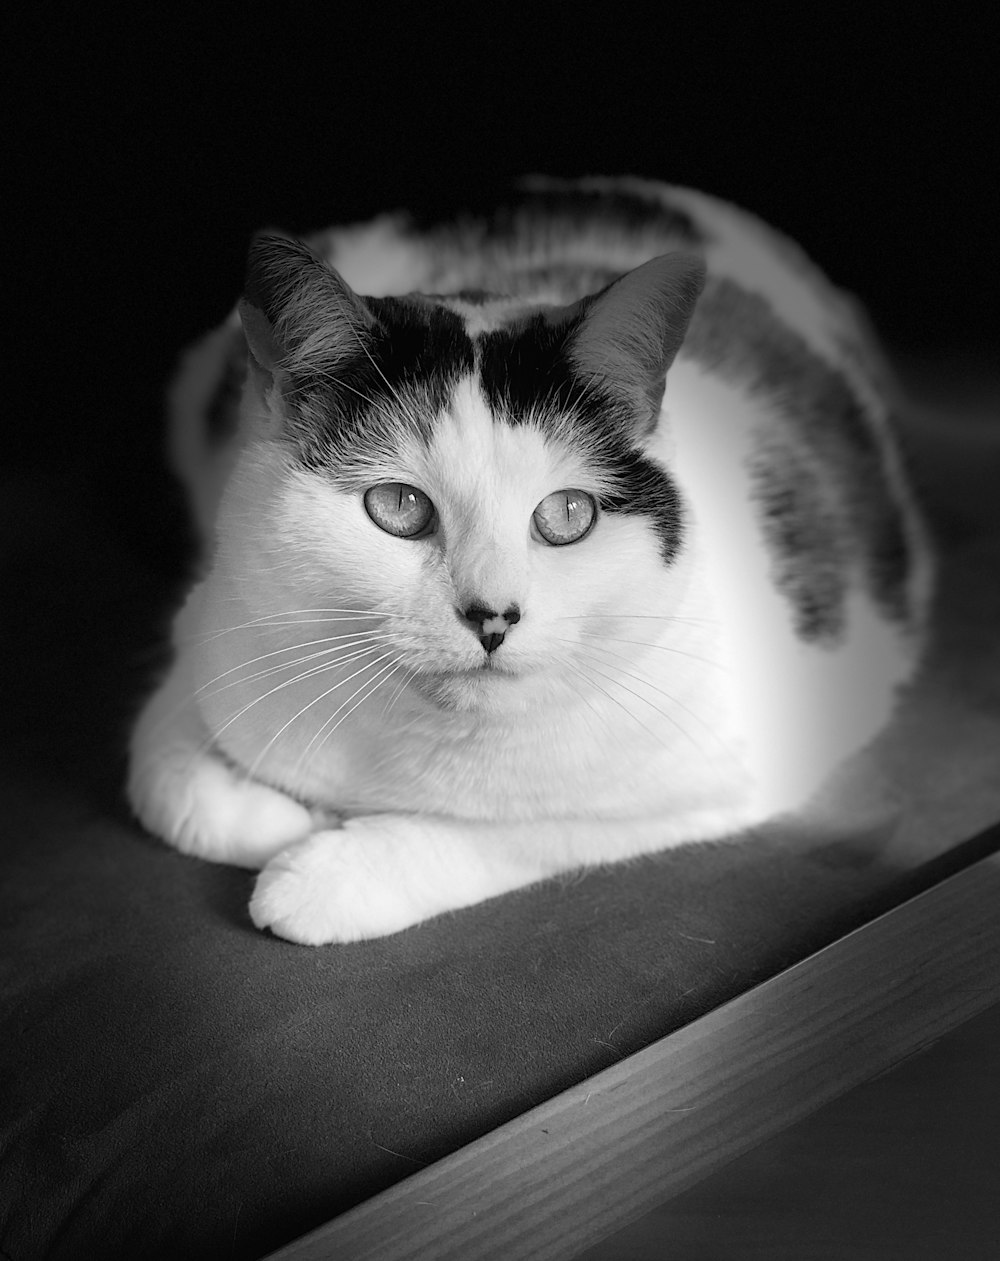 Fotografía en escala de grises de un gato acostado en la superficie